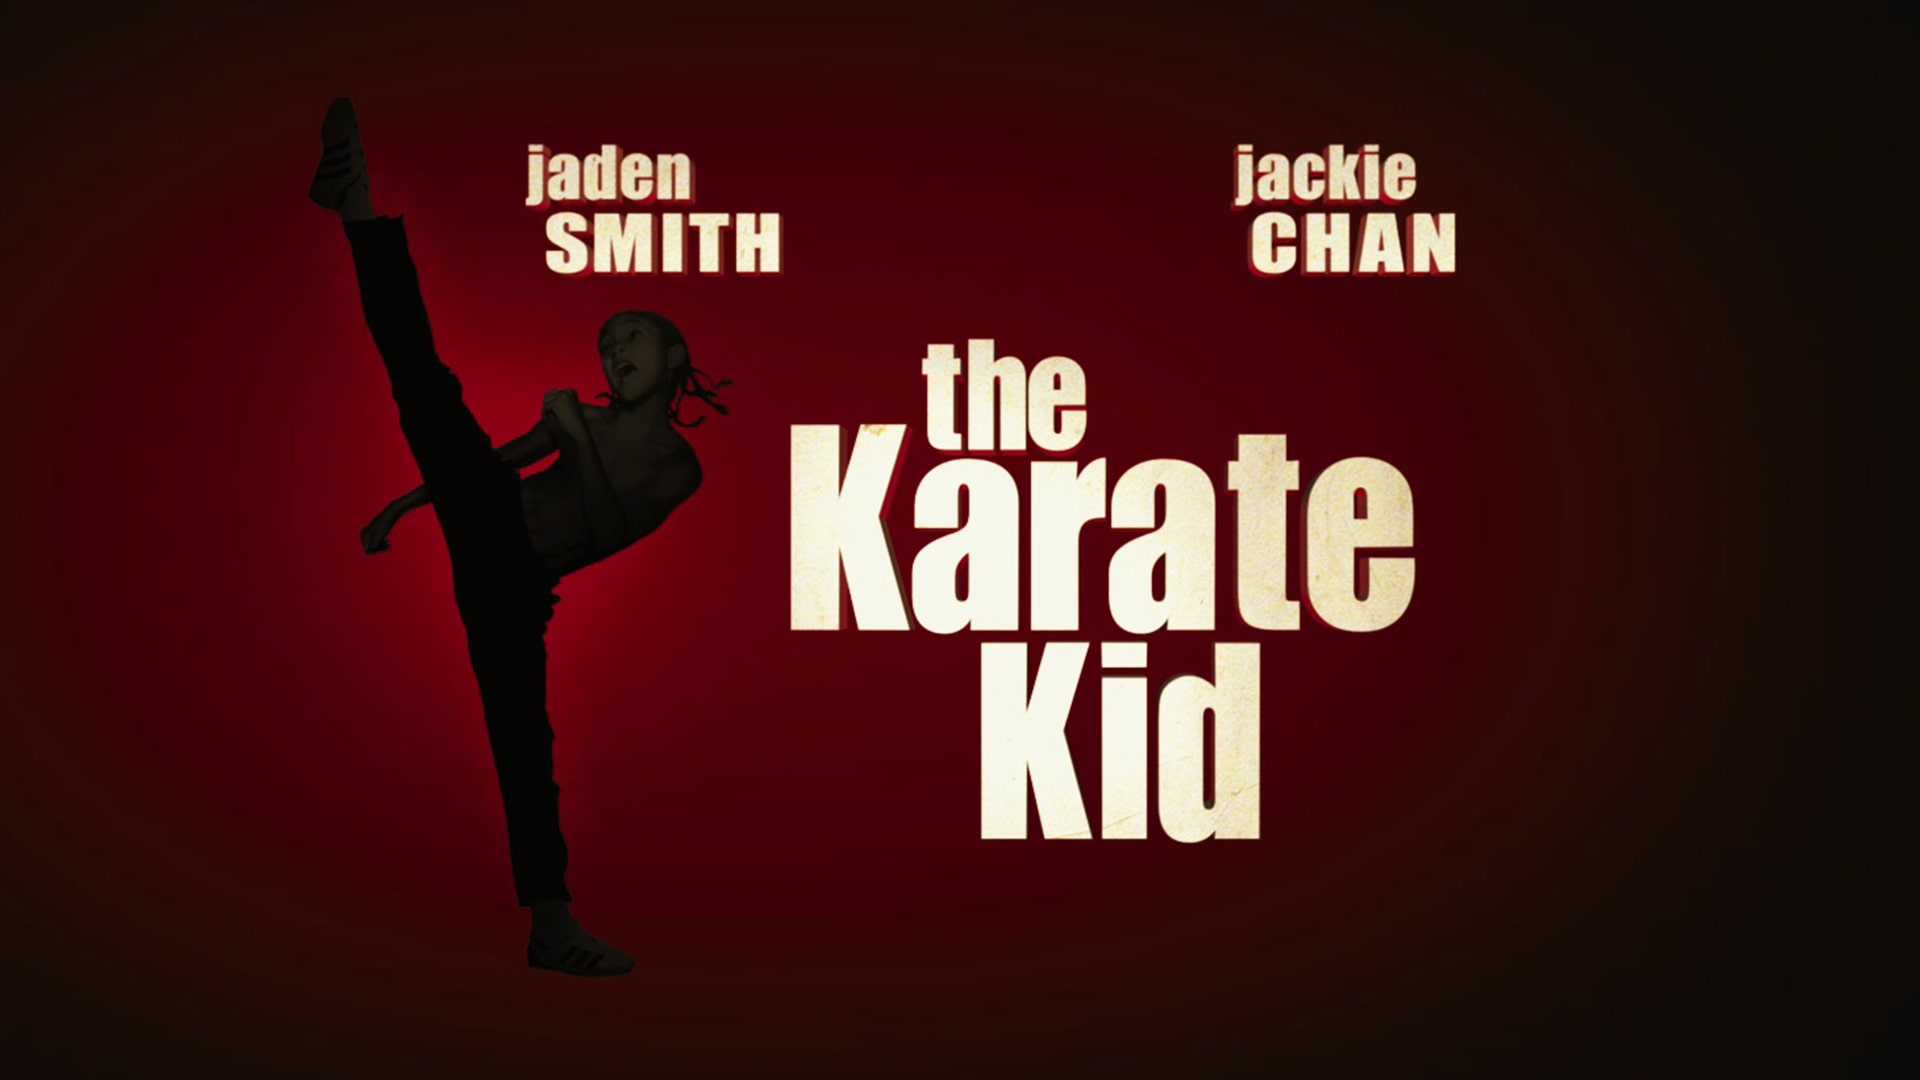 HD Karate Kid Wallpapers